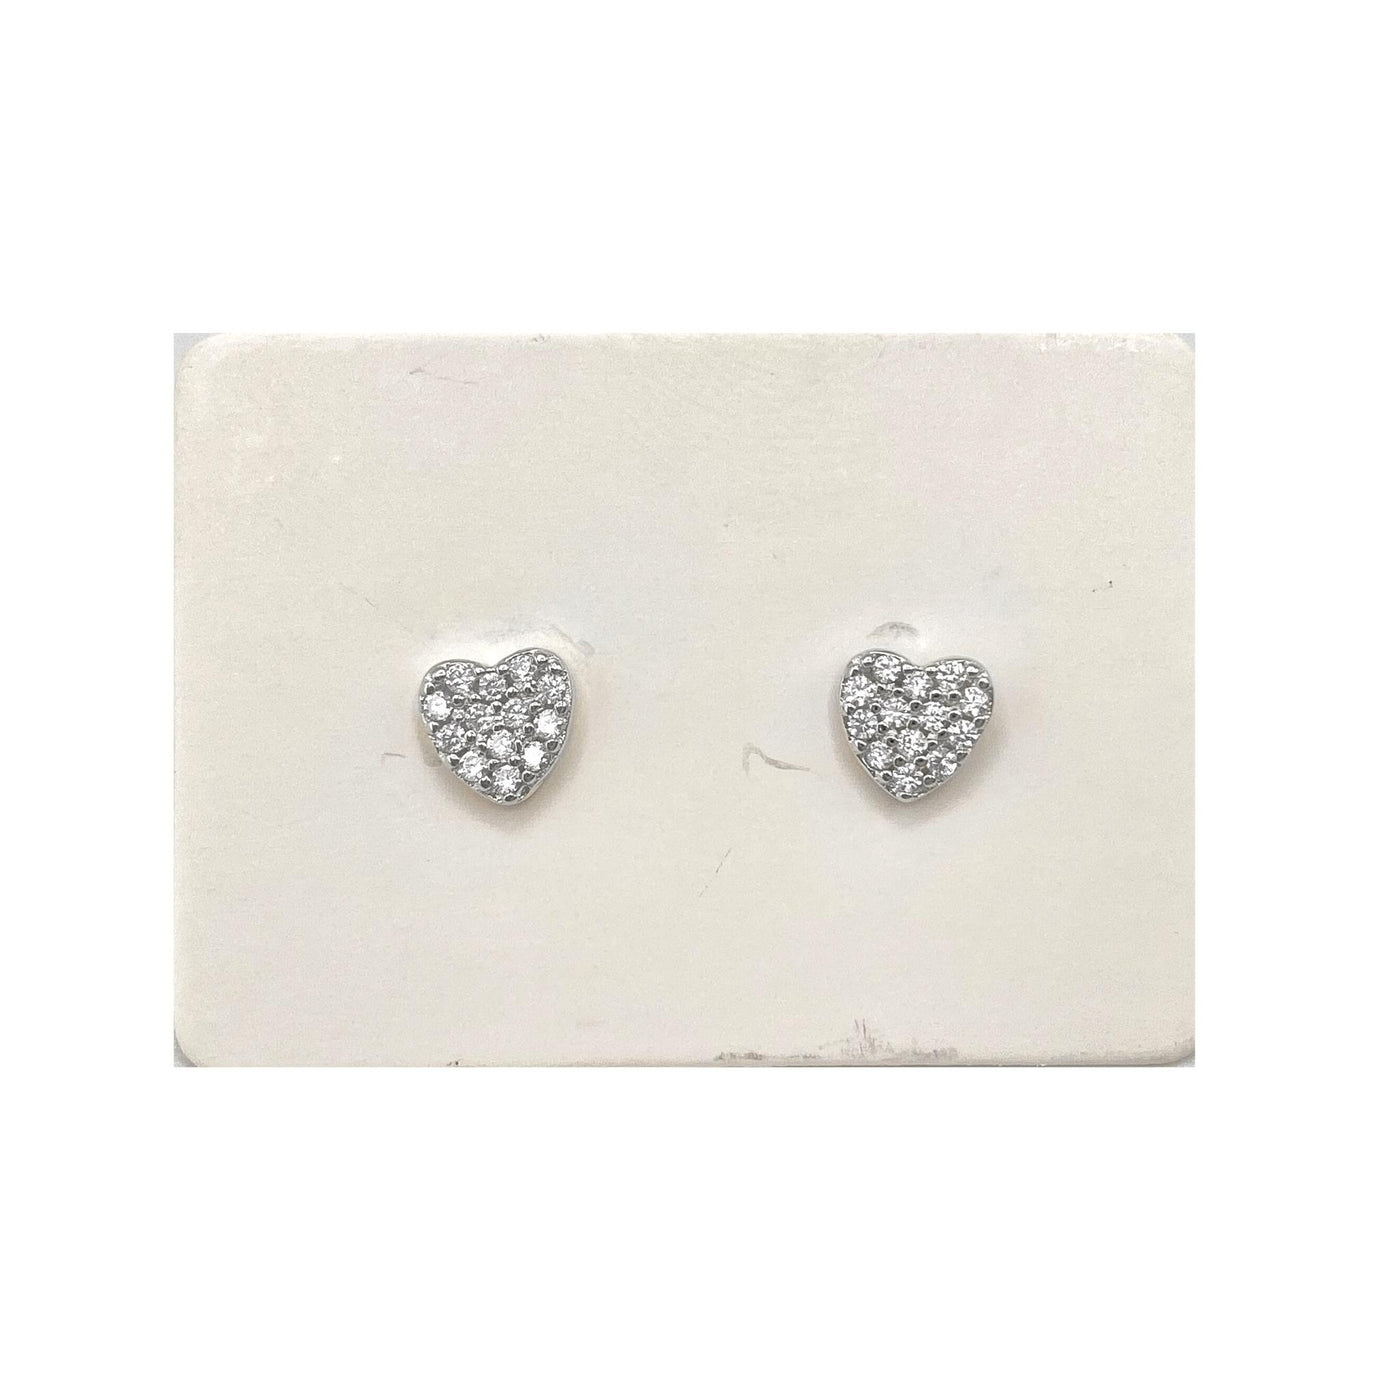 Confezione da 5 paia di orecchini in argento a cuore - 5 mm